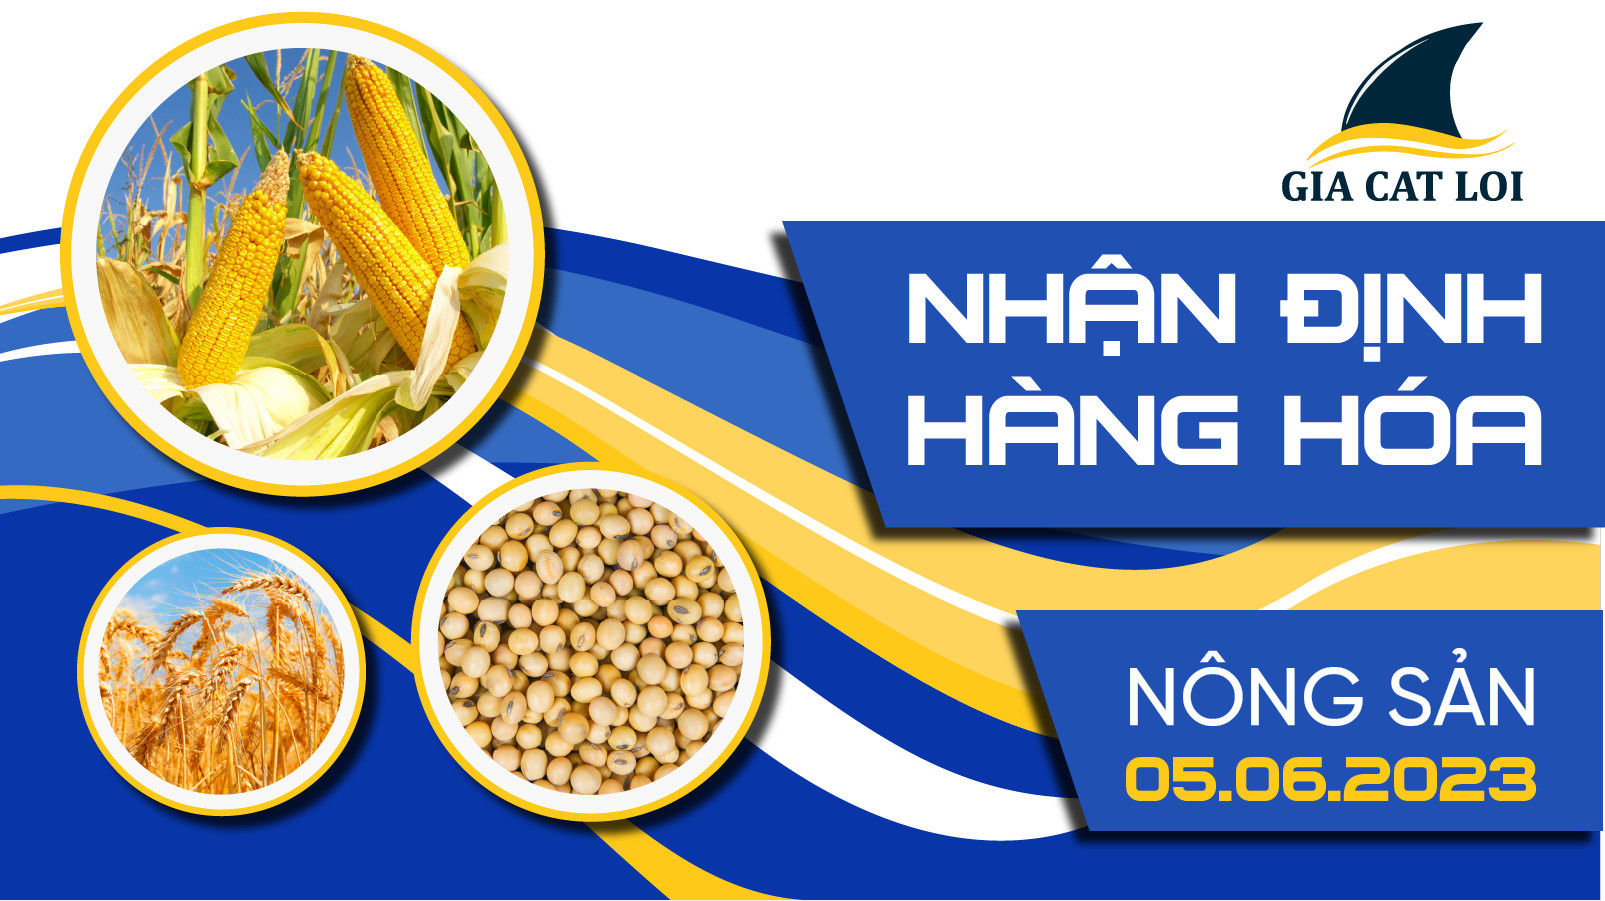 nhan-dinh-nhom-nong-san-05-06-2023